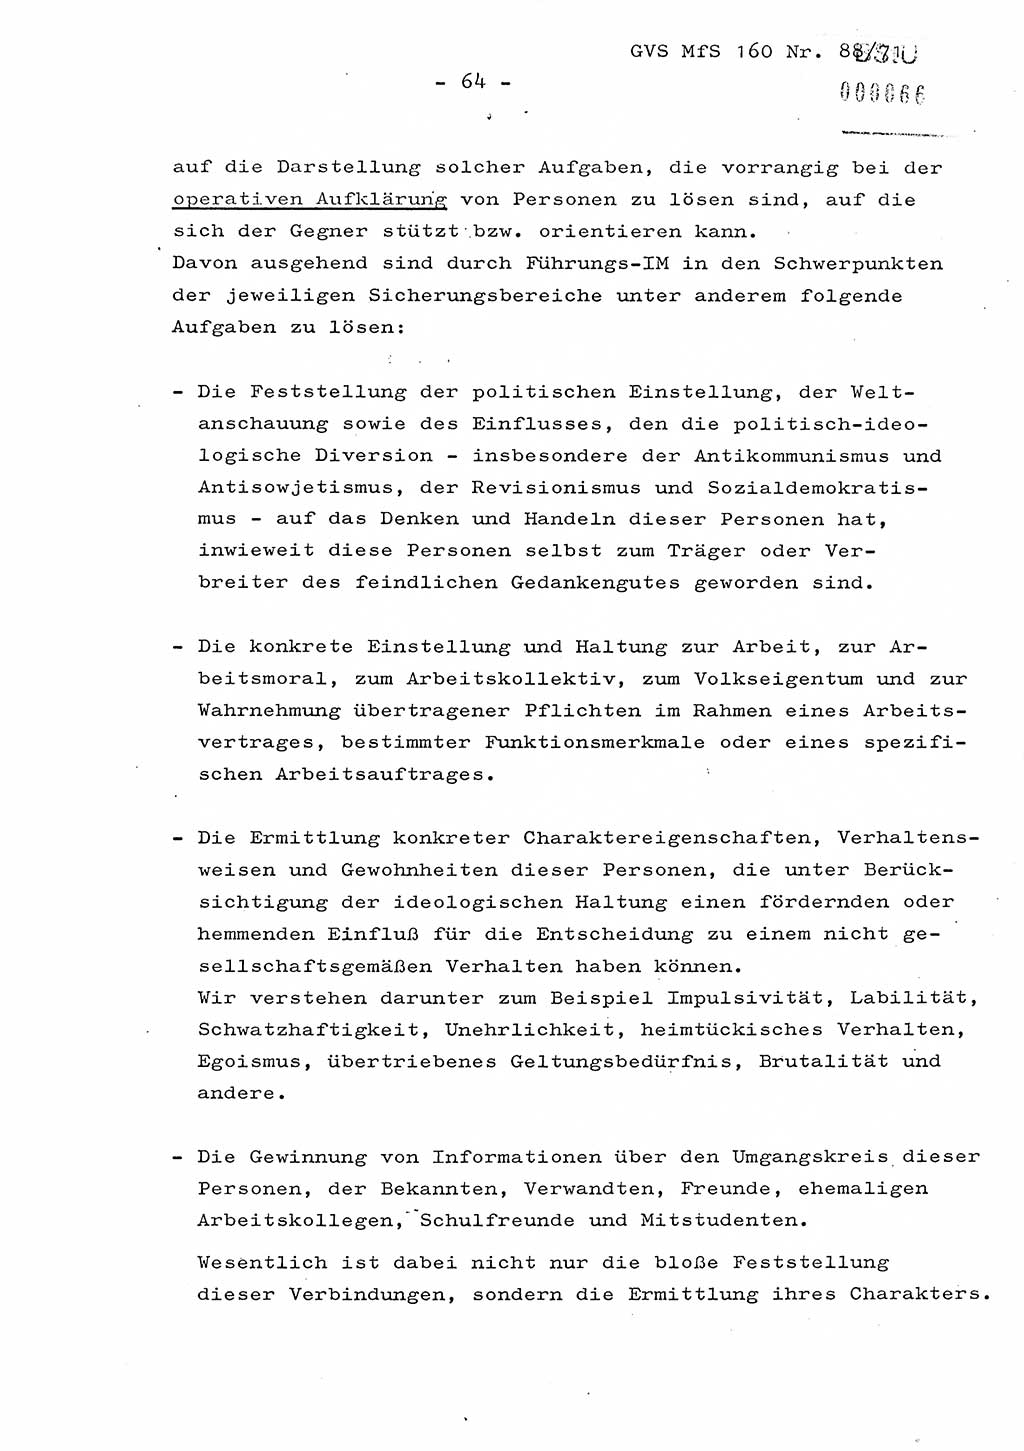 Dissertation Oberstleutnant Josef Schwarz (BV Schwerin), Major Fritz Amm (JHS), Hauptmann Peter Gräßler (JHS), Ministerium für Staatssicherheit (MfS) [Deutsche Demokratische Republik (DDR)], Juristische Hochschule (JHS), Geheime Verschlußsache (GVS) 160-88/71, Potsdam 1972, Seite 64 (Diss. MfS DDR JHS GVS 160-88/71 1972, S. 64)